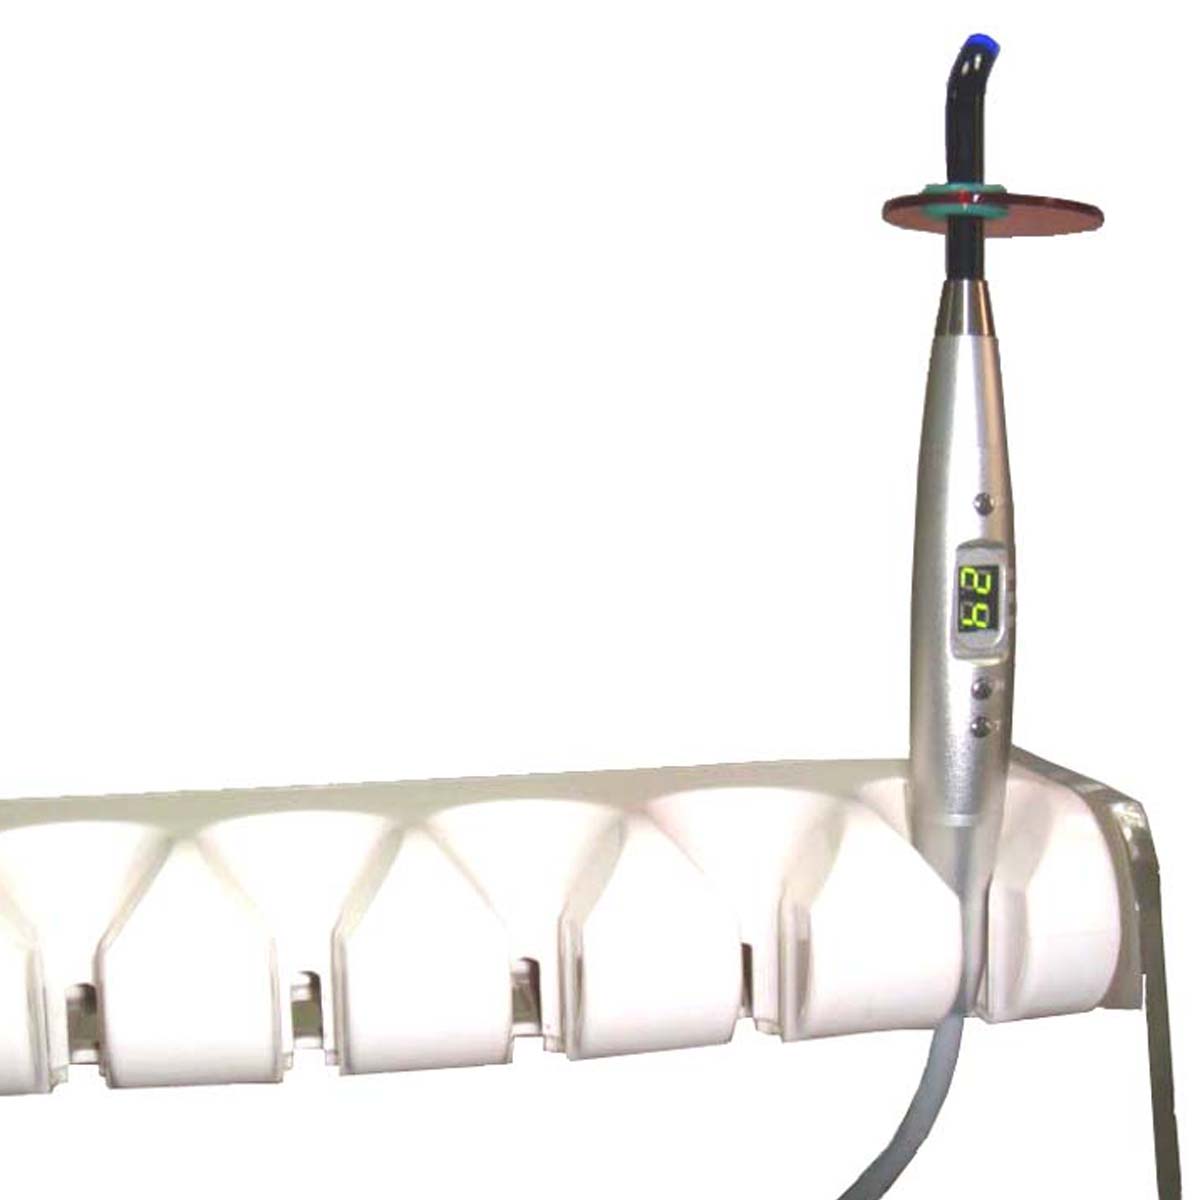 سبارك اللاسلكي LED علاج الأسنان الخفيفة مع الجسم الألومنيوم - 1 عد 5 أو 7 وات اللون الأسود المهنية طبيب الأسنان أداة (حبالي والأسنان كرسي النسخة المتوفرة)